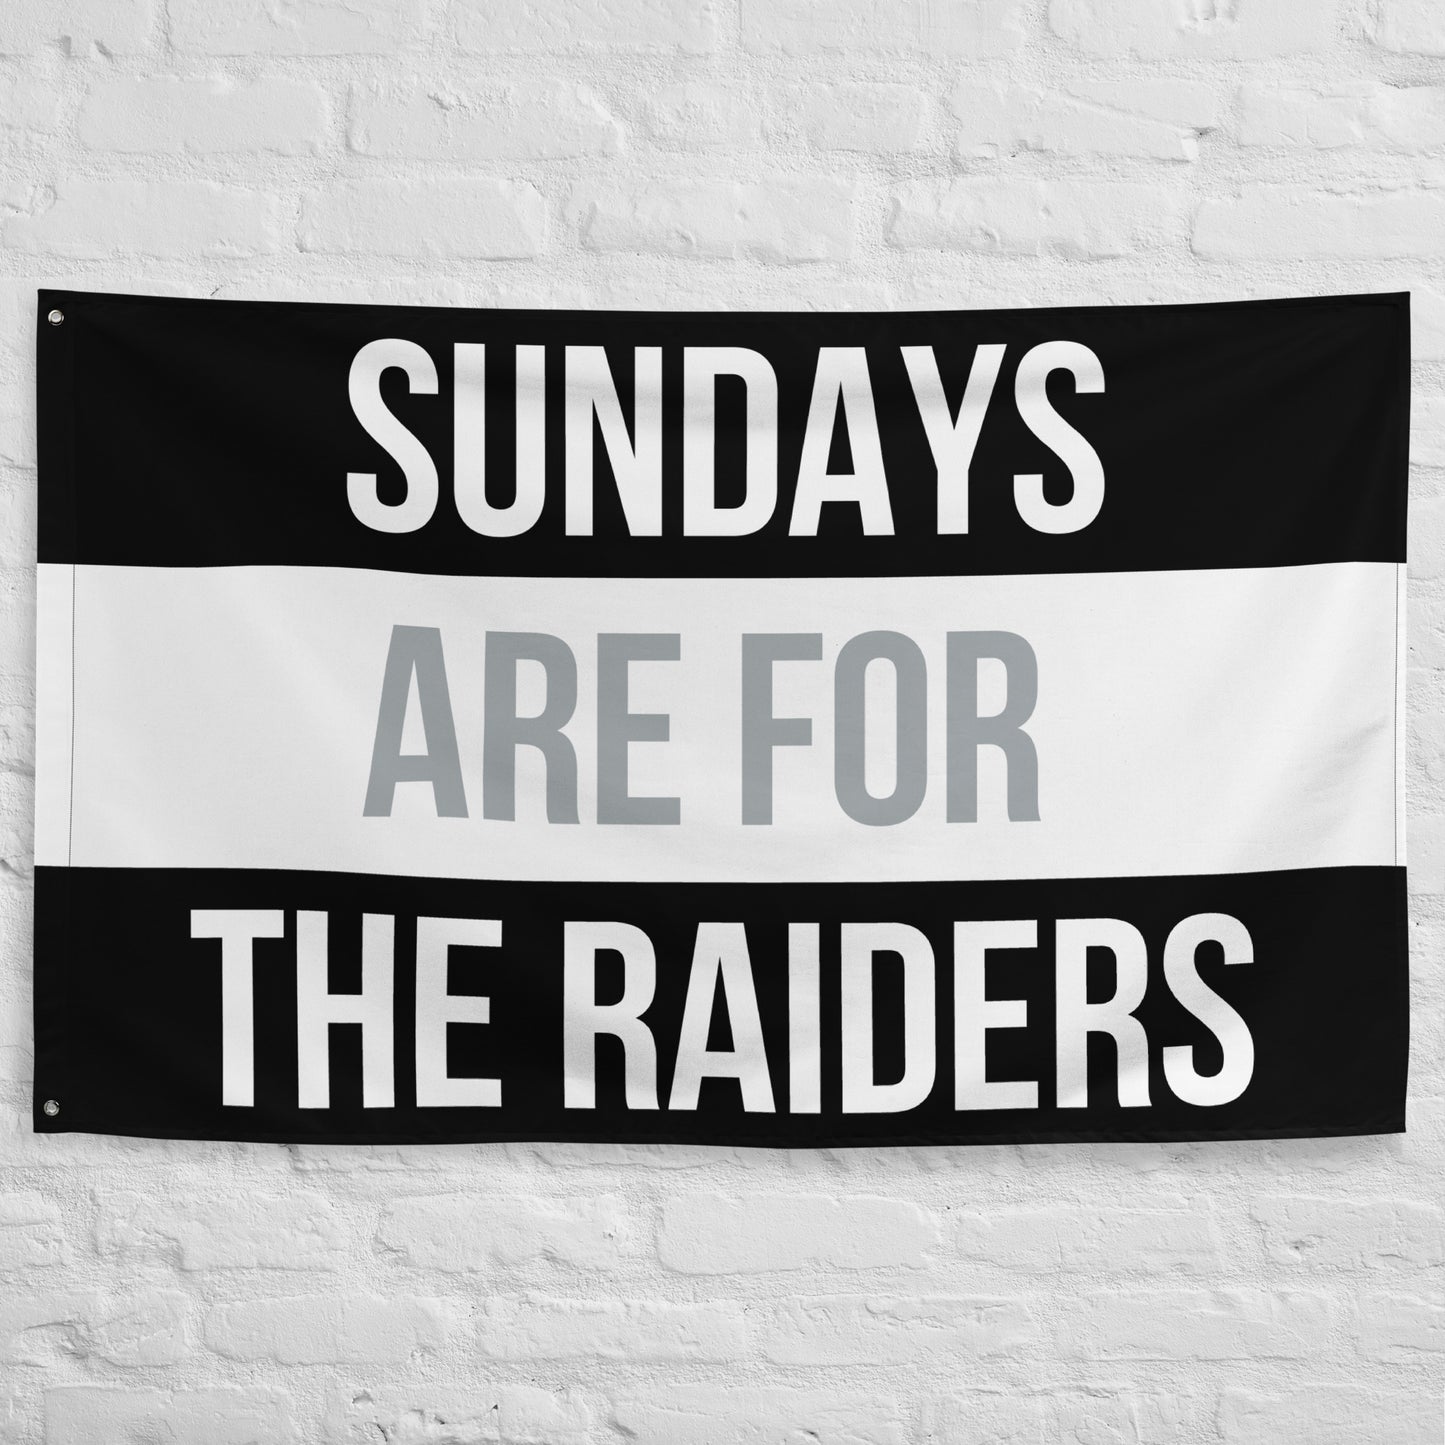 Sundays are for the Raiders Flag, Las Vegas Raiders Flag, Football Tailgate Flag